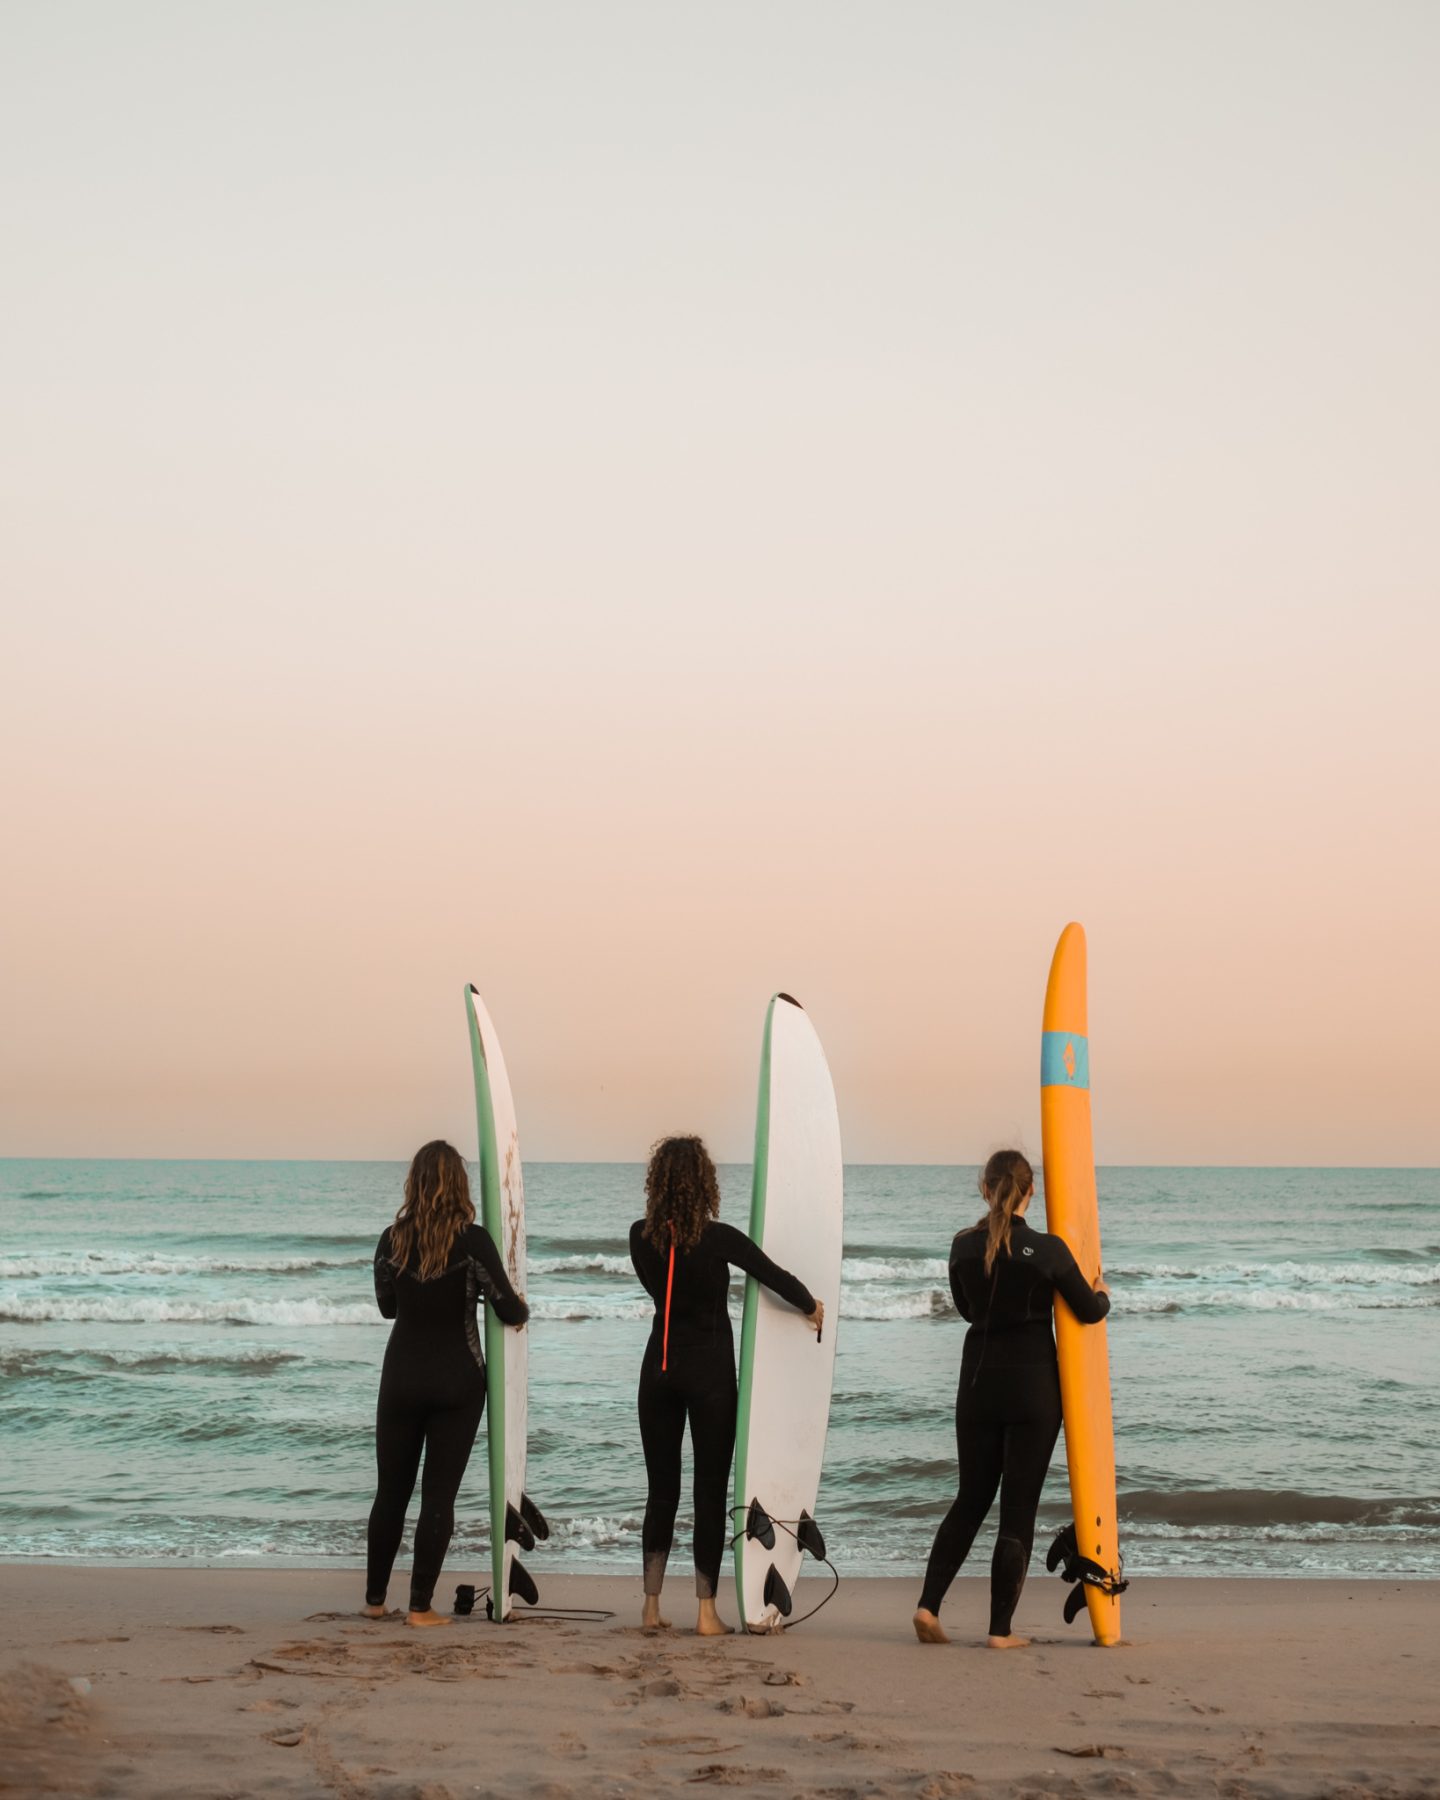 Drie surfers met surfboard op een rij, kijkend naar de zee.